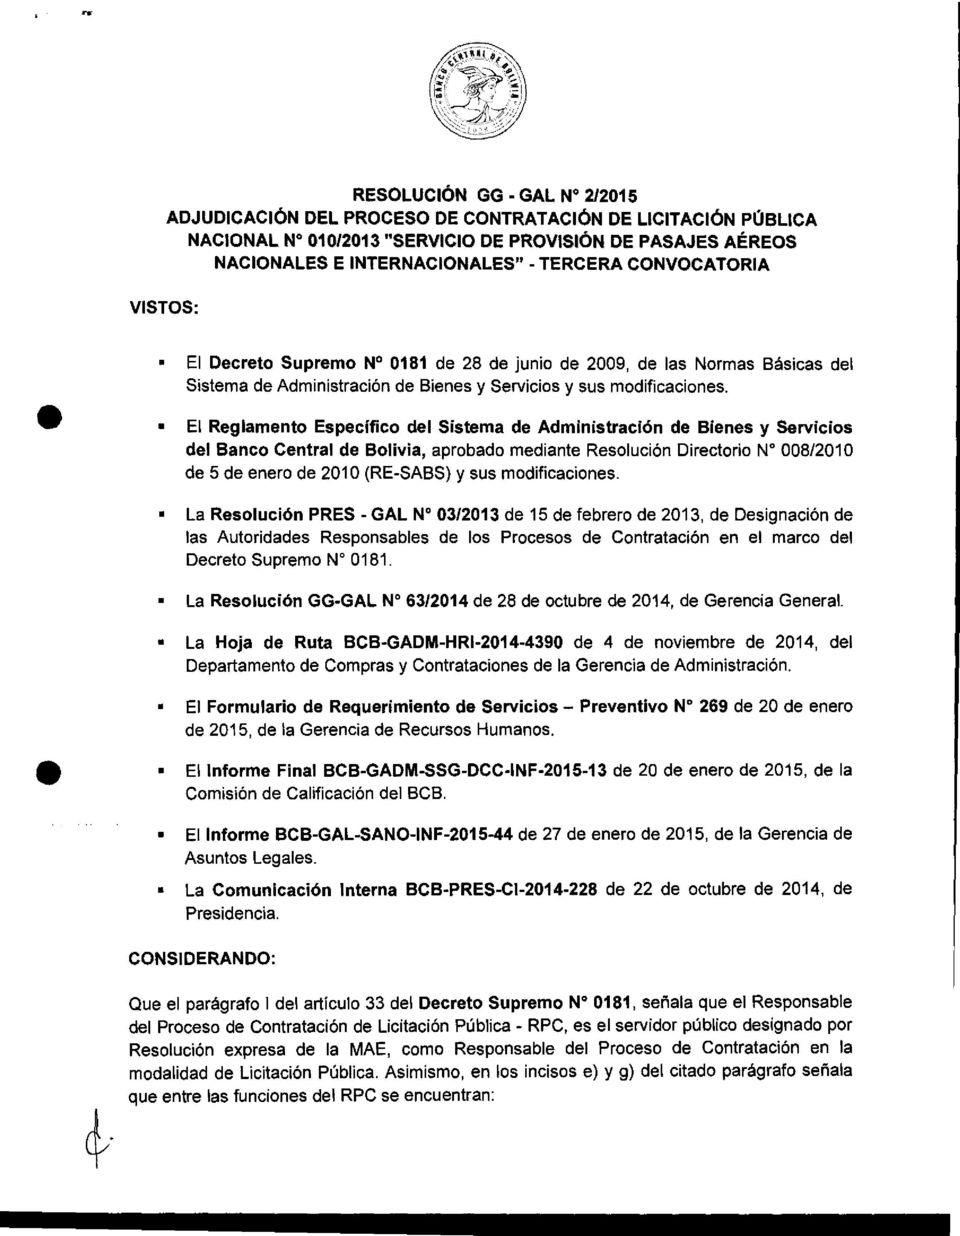 El Reglamento Específico del Sistema de Administración de Bienes y Servicios del Banco Central de Bolivia, aprobado mediante Resolución Directorio N 008/2010 de 5 de enero de 2010 (RE-SABS) y sus